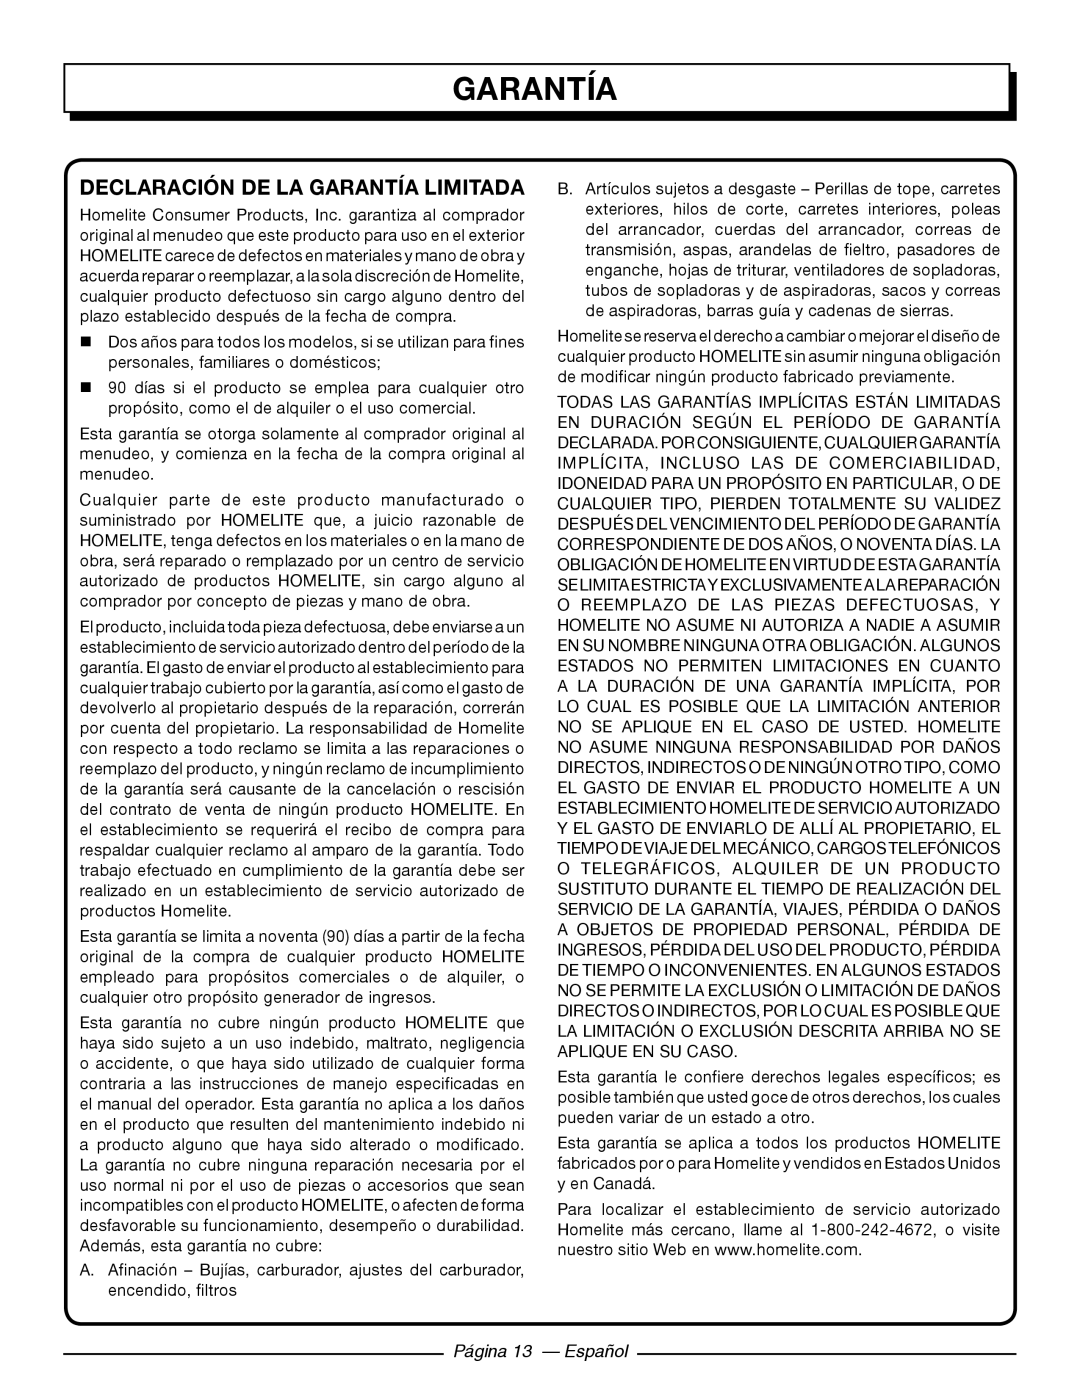 Homelite UT41121 manuel dutilisation Declaración De La Garantía Limitada, Página 13 - Español 